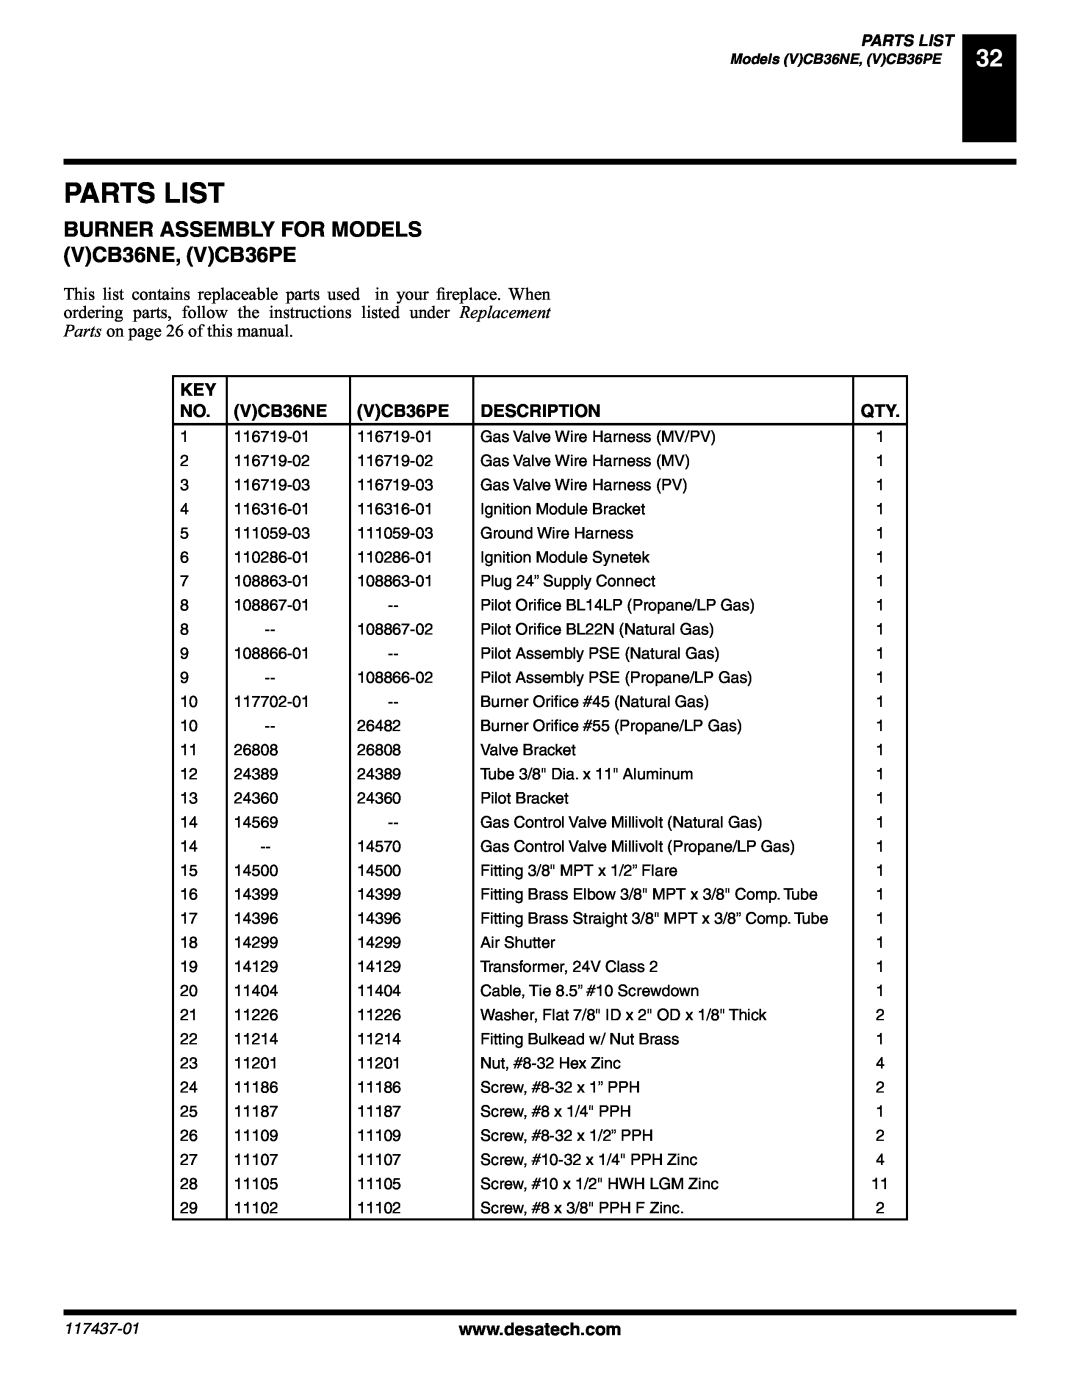 Desa (V) CB36(N installation manual Parts List, BURNER ASSEMBLY FOR MODELS VCB36NE, VCB36PE, Description 